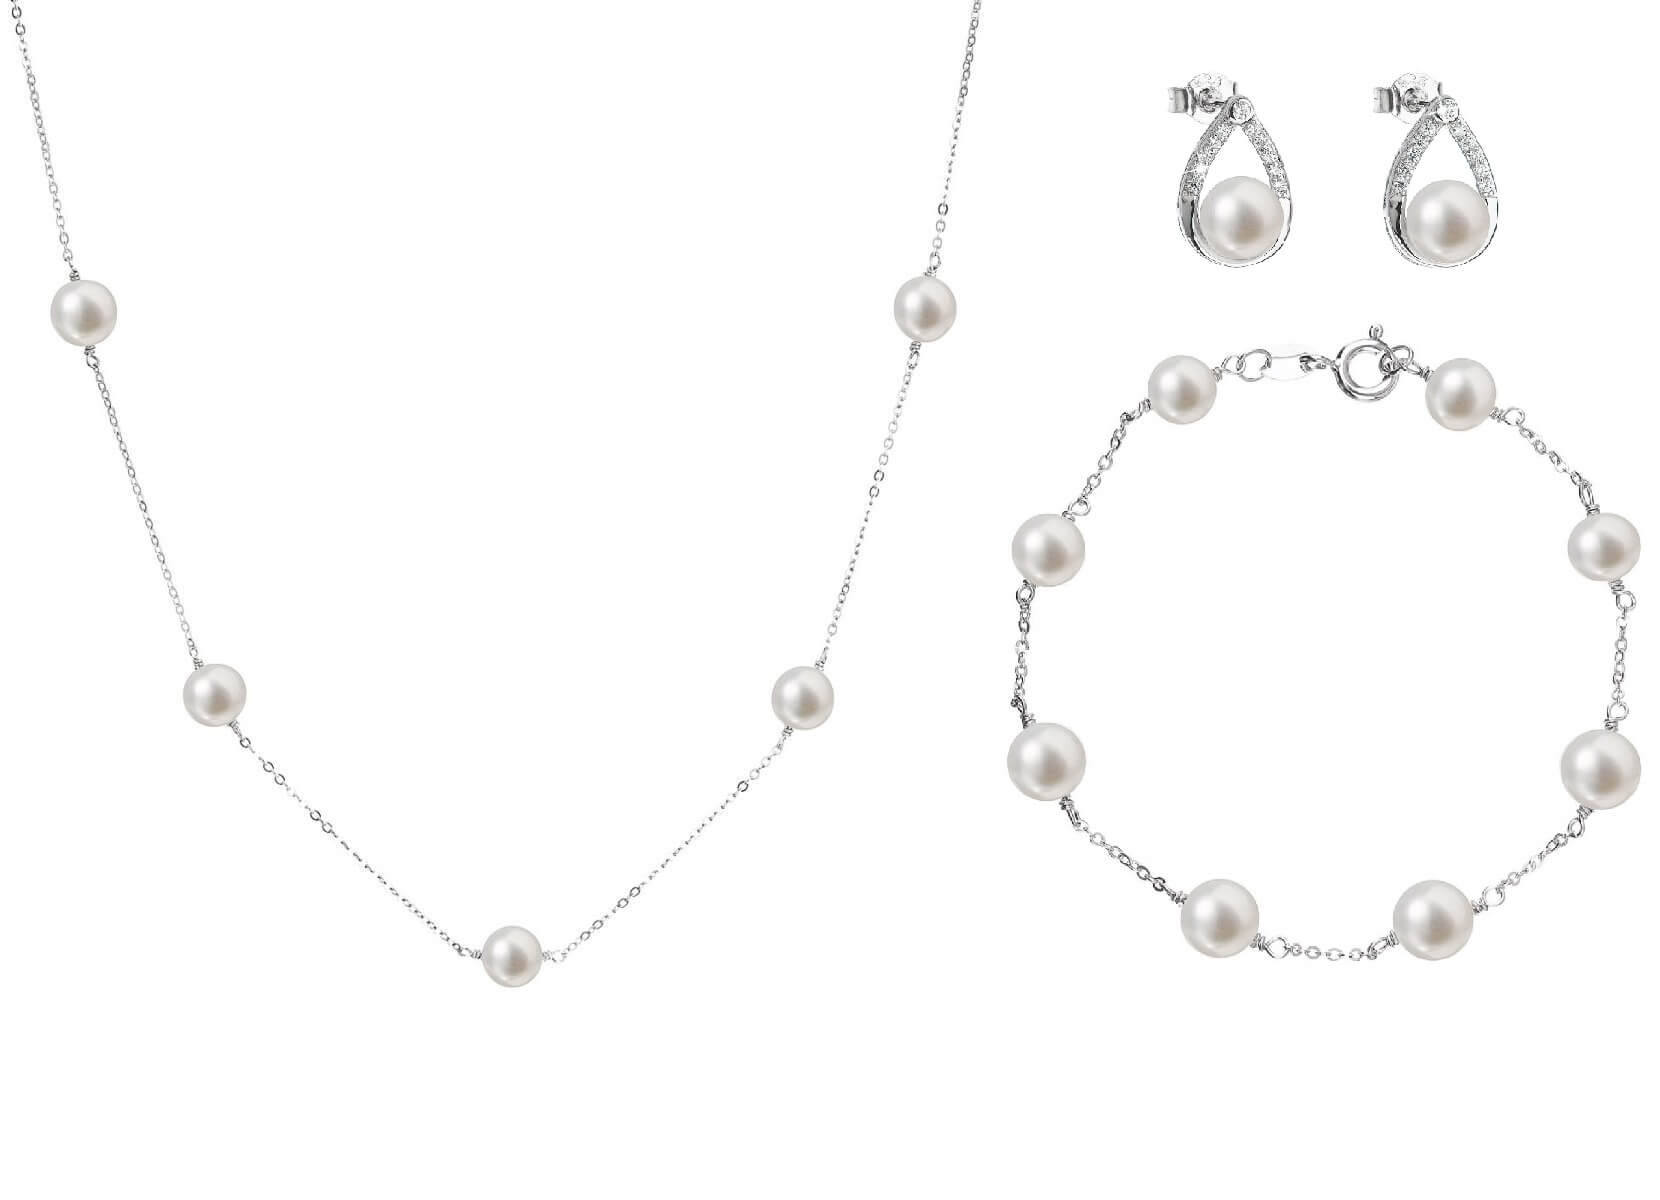 Evolution Group Zvýhodněná souprava stříbrných šperků Pavona 21033.1, 22015.1, 23008.1 (náhrdelník, náramek, náušnice)